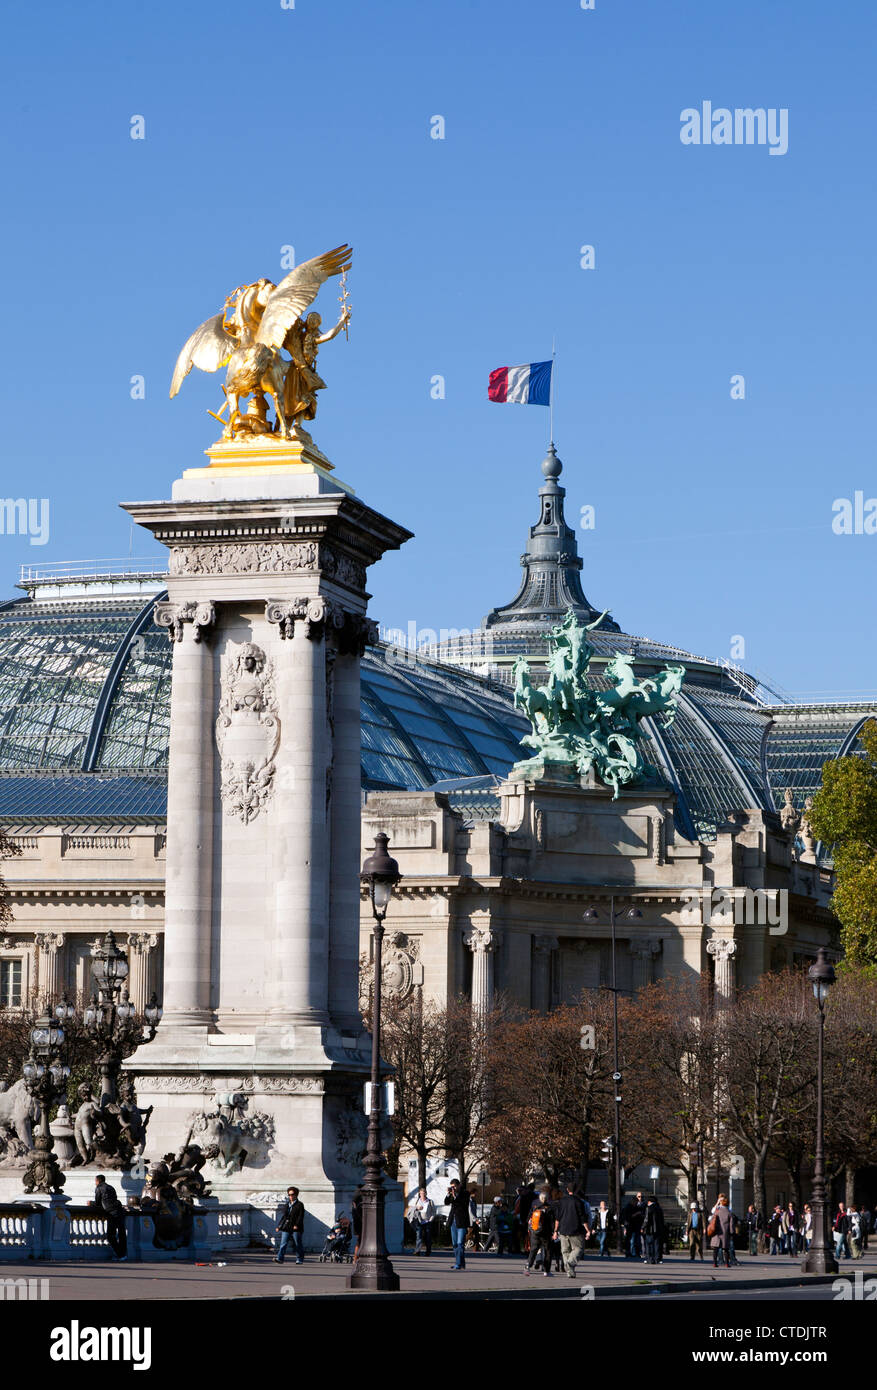 Eines der goldenen Statuen inszeniert diese Linie Pont Alexandre II für Grand Palais des Champs-Elysée-Palast im Hintergrund. Stockfoto